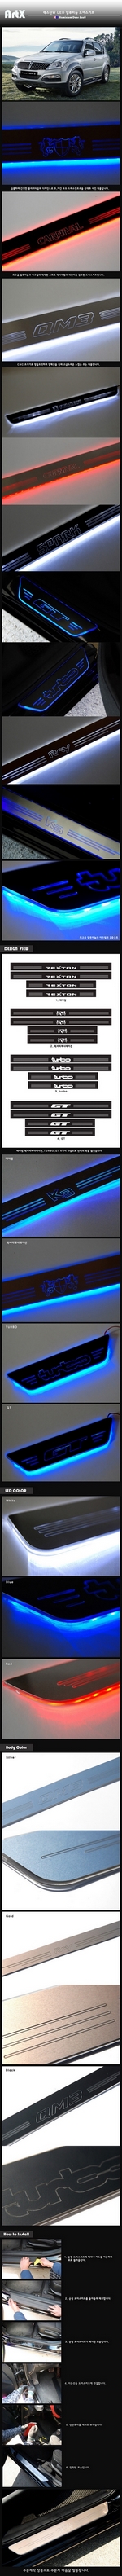 Накладки на пороги алюминиевые с подсветкой (вариант 2) ArtX SsangYong Rexton 2001-2015